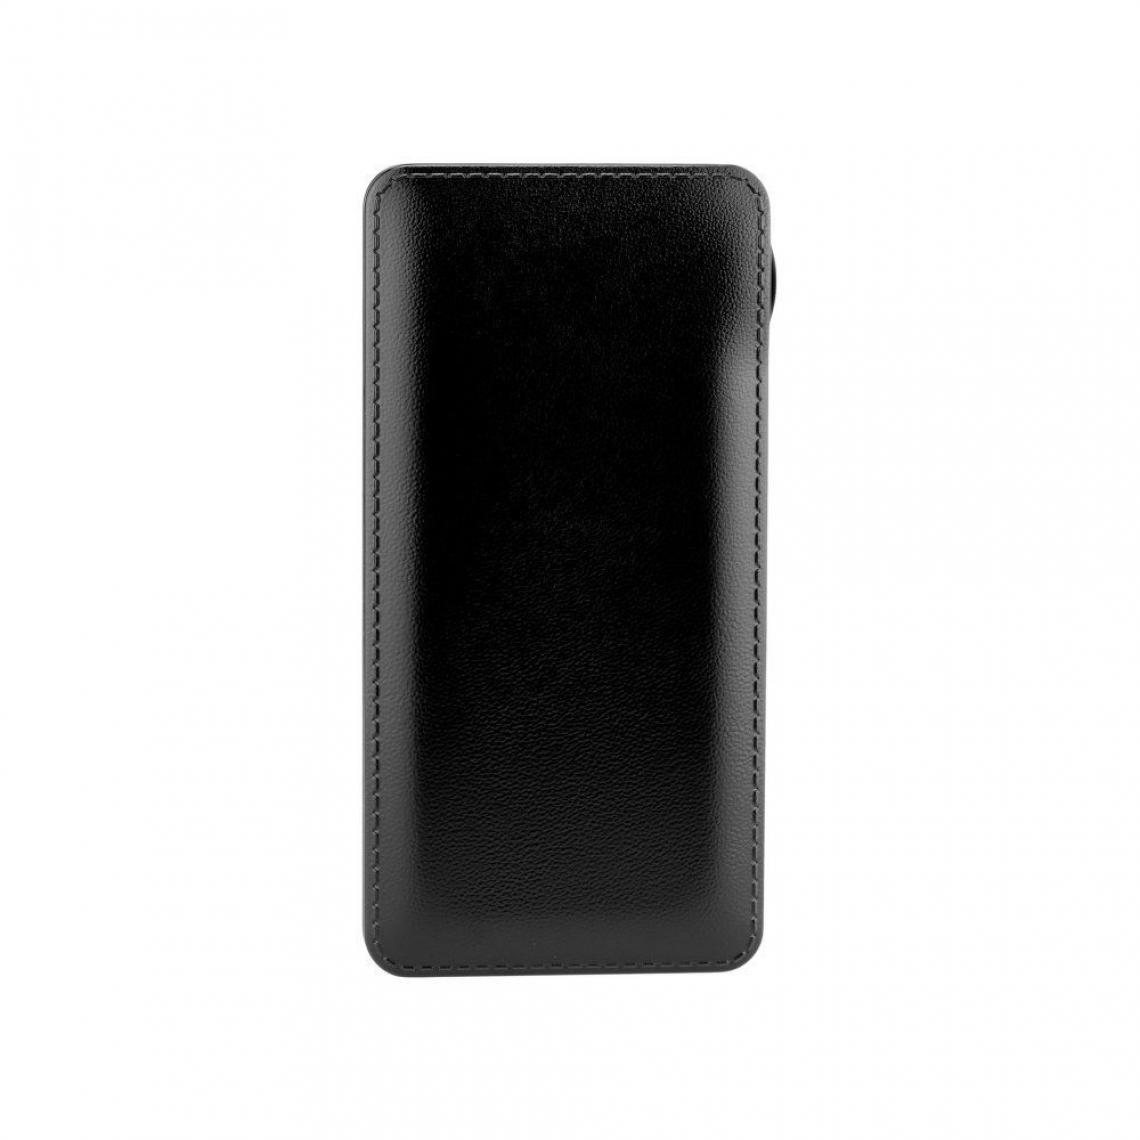 Ozzzo - Chargeur batterie externe 10000mAh powerbank ozzzo noir pour Teclast M16 - Autres accessoires smartphone